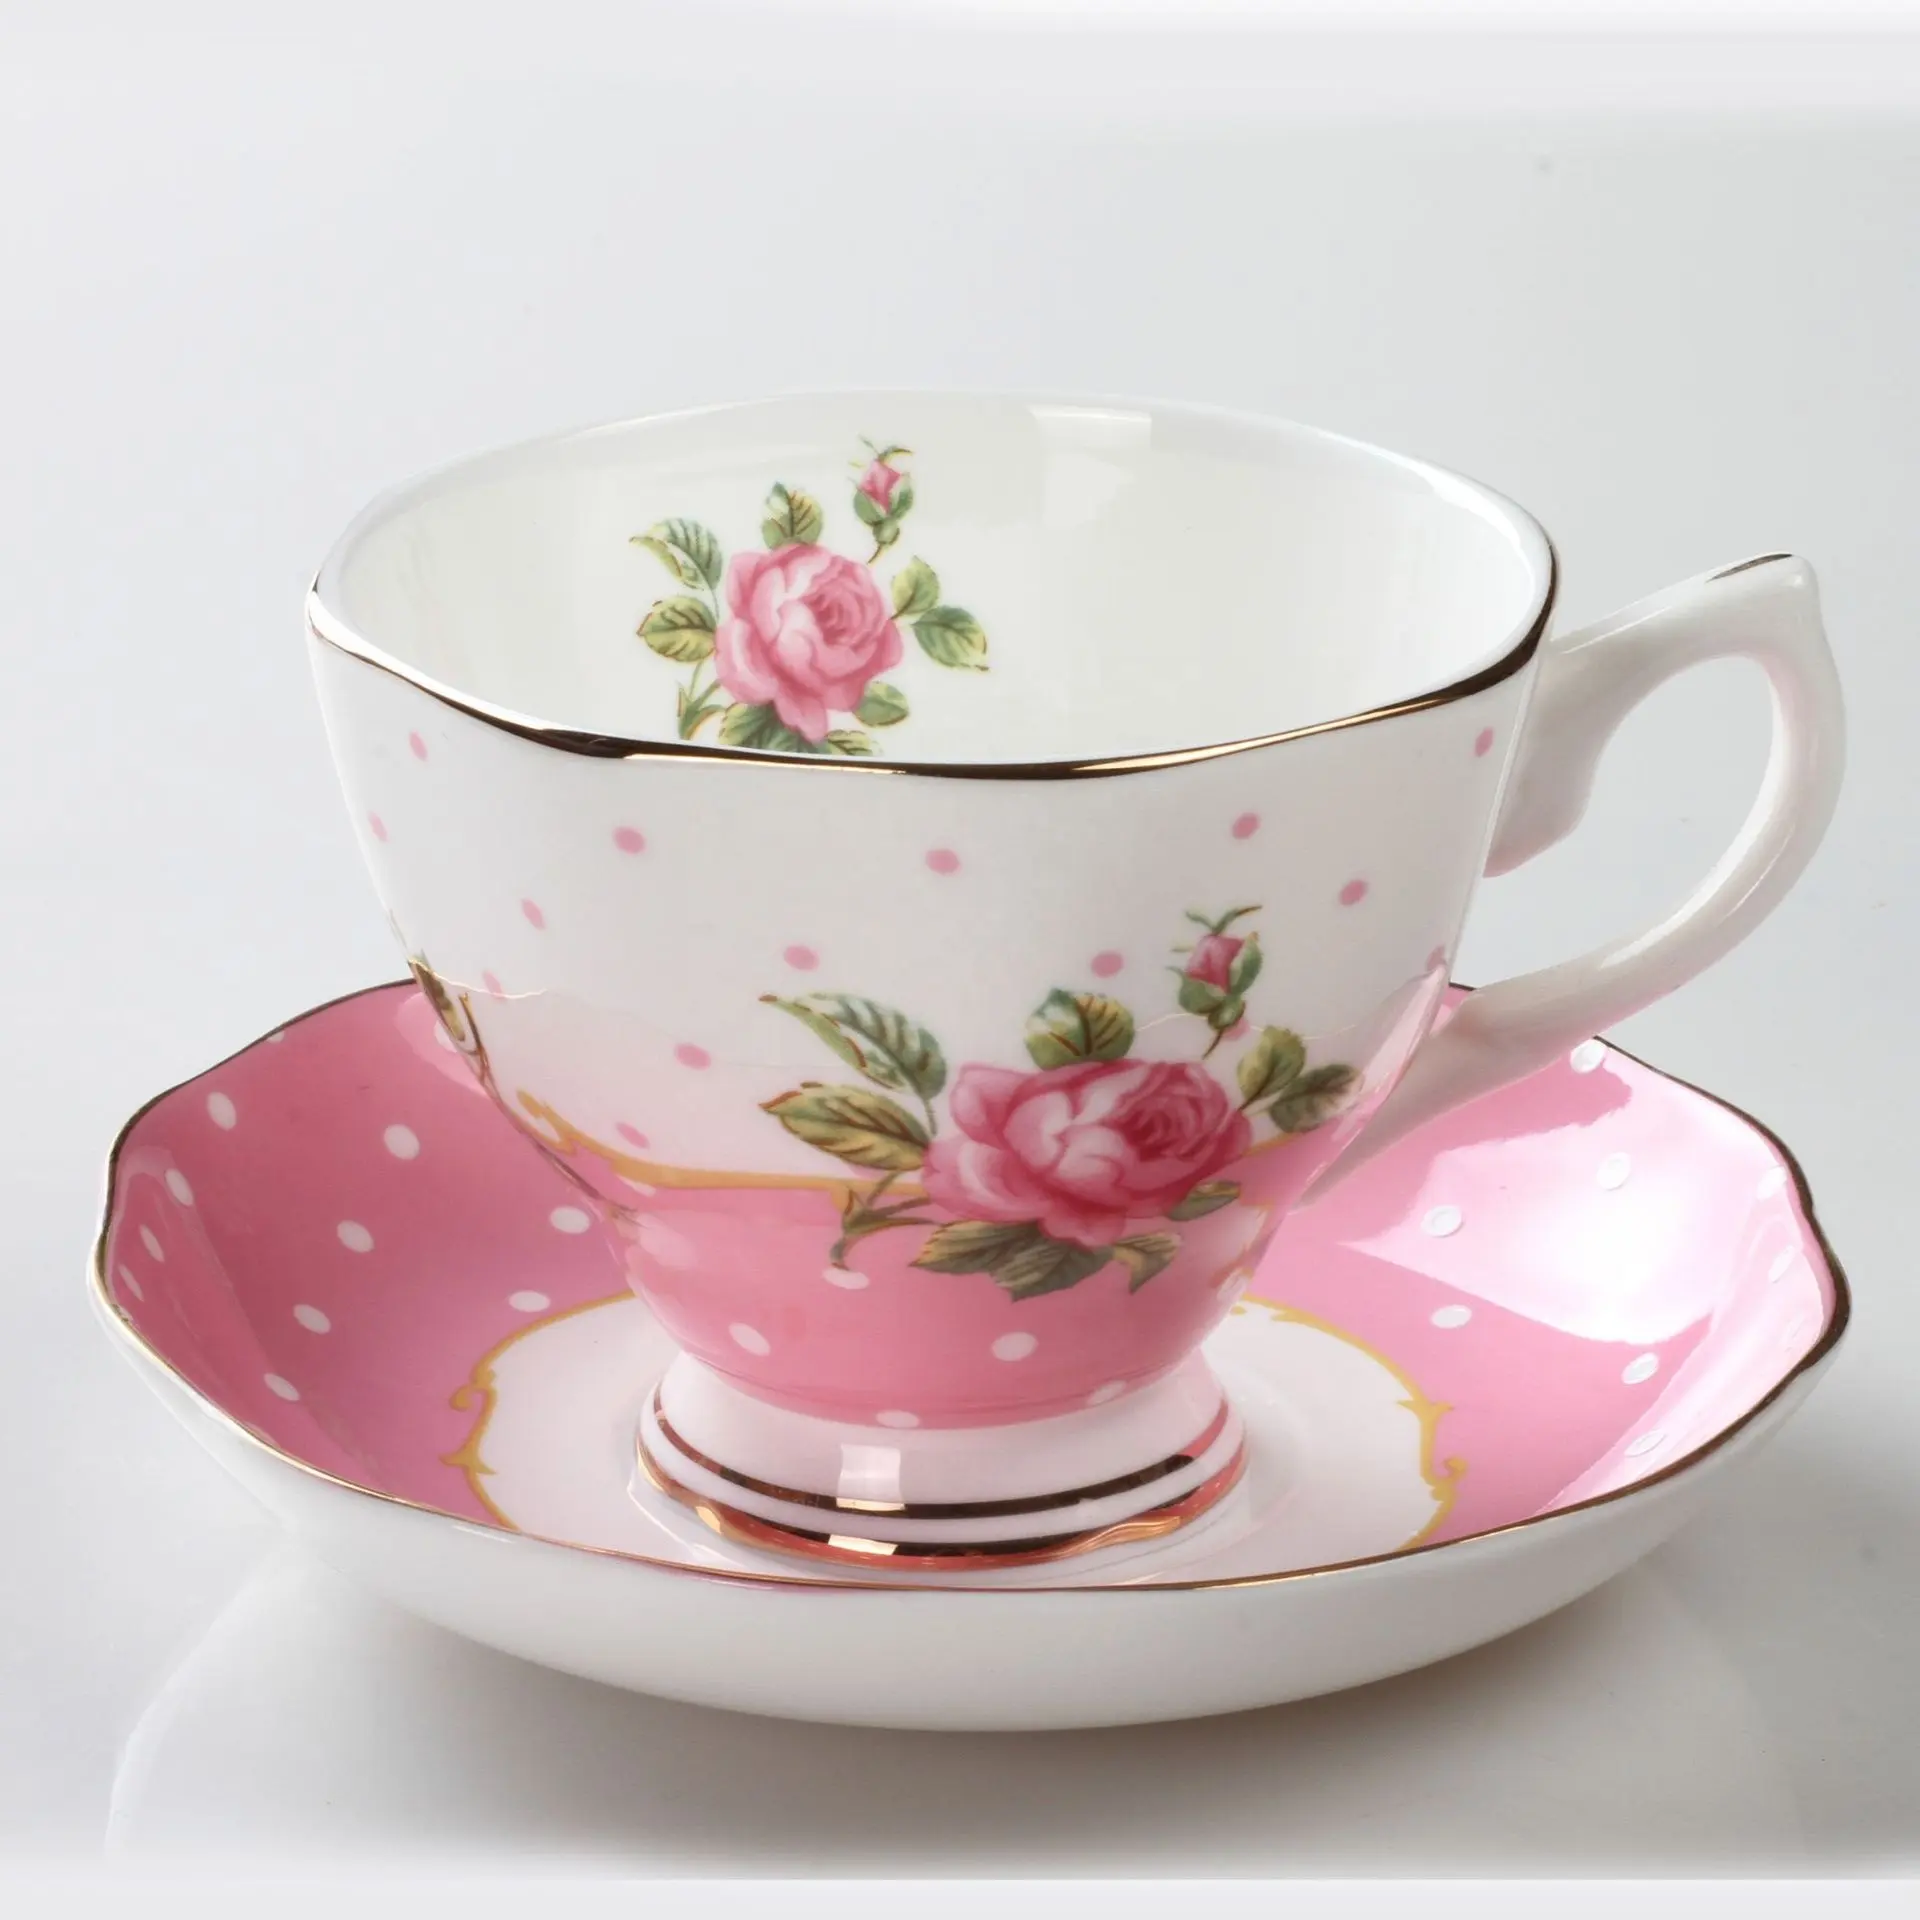 Tazas de cerámica de estilo romántico, juego de platillos y tazas de café reales de China, Rosa, en caja Formal